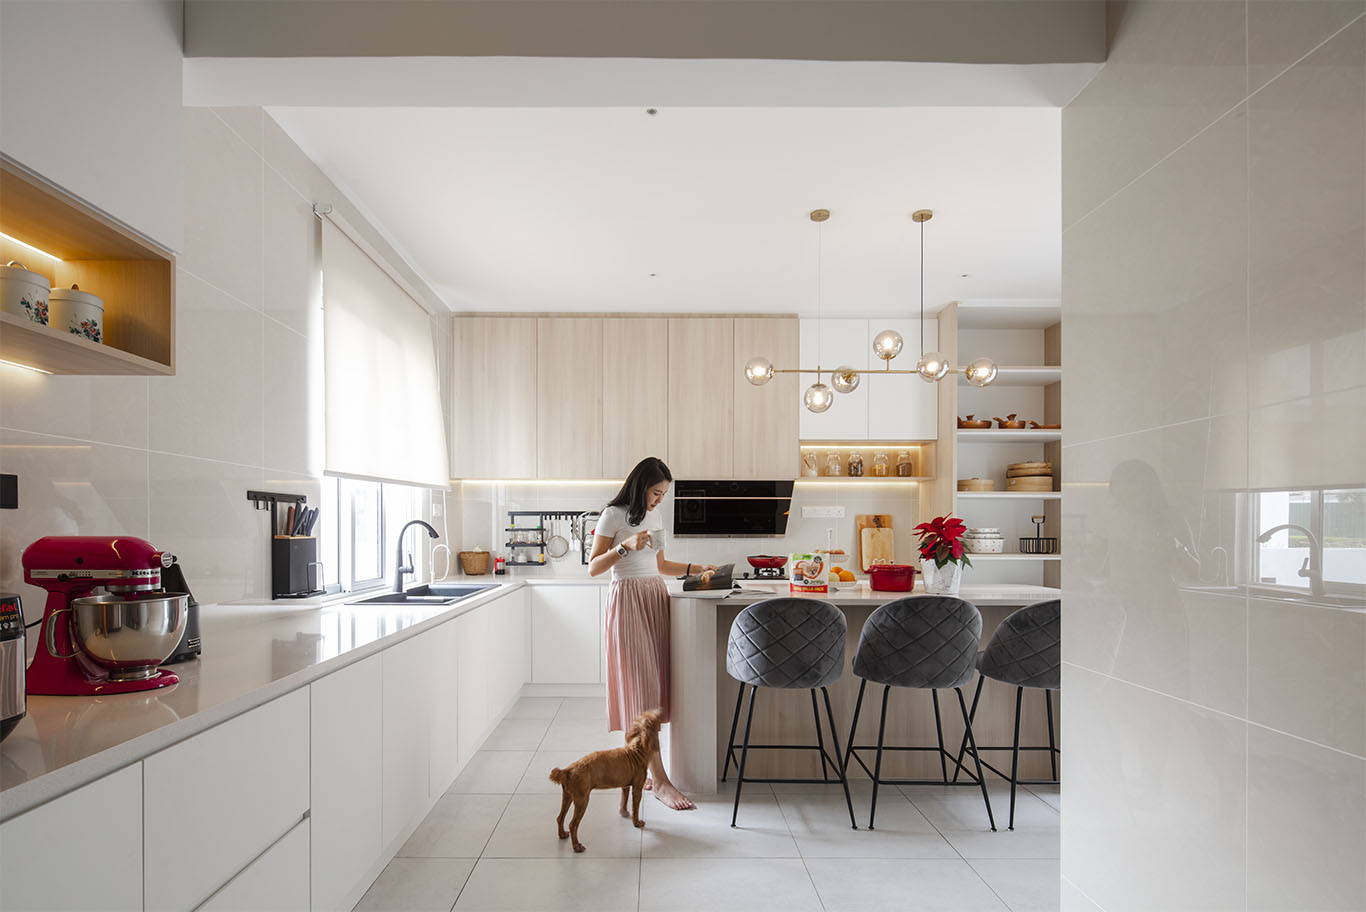 Grande Rhapsody long white kitchen cabinet with minimalist drawe Mieux interior deisgn